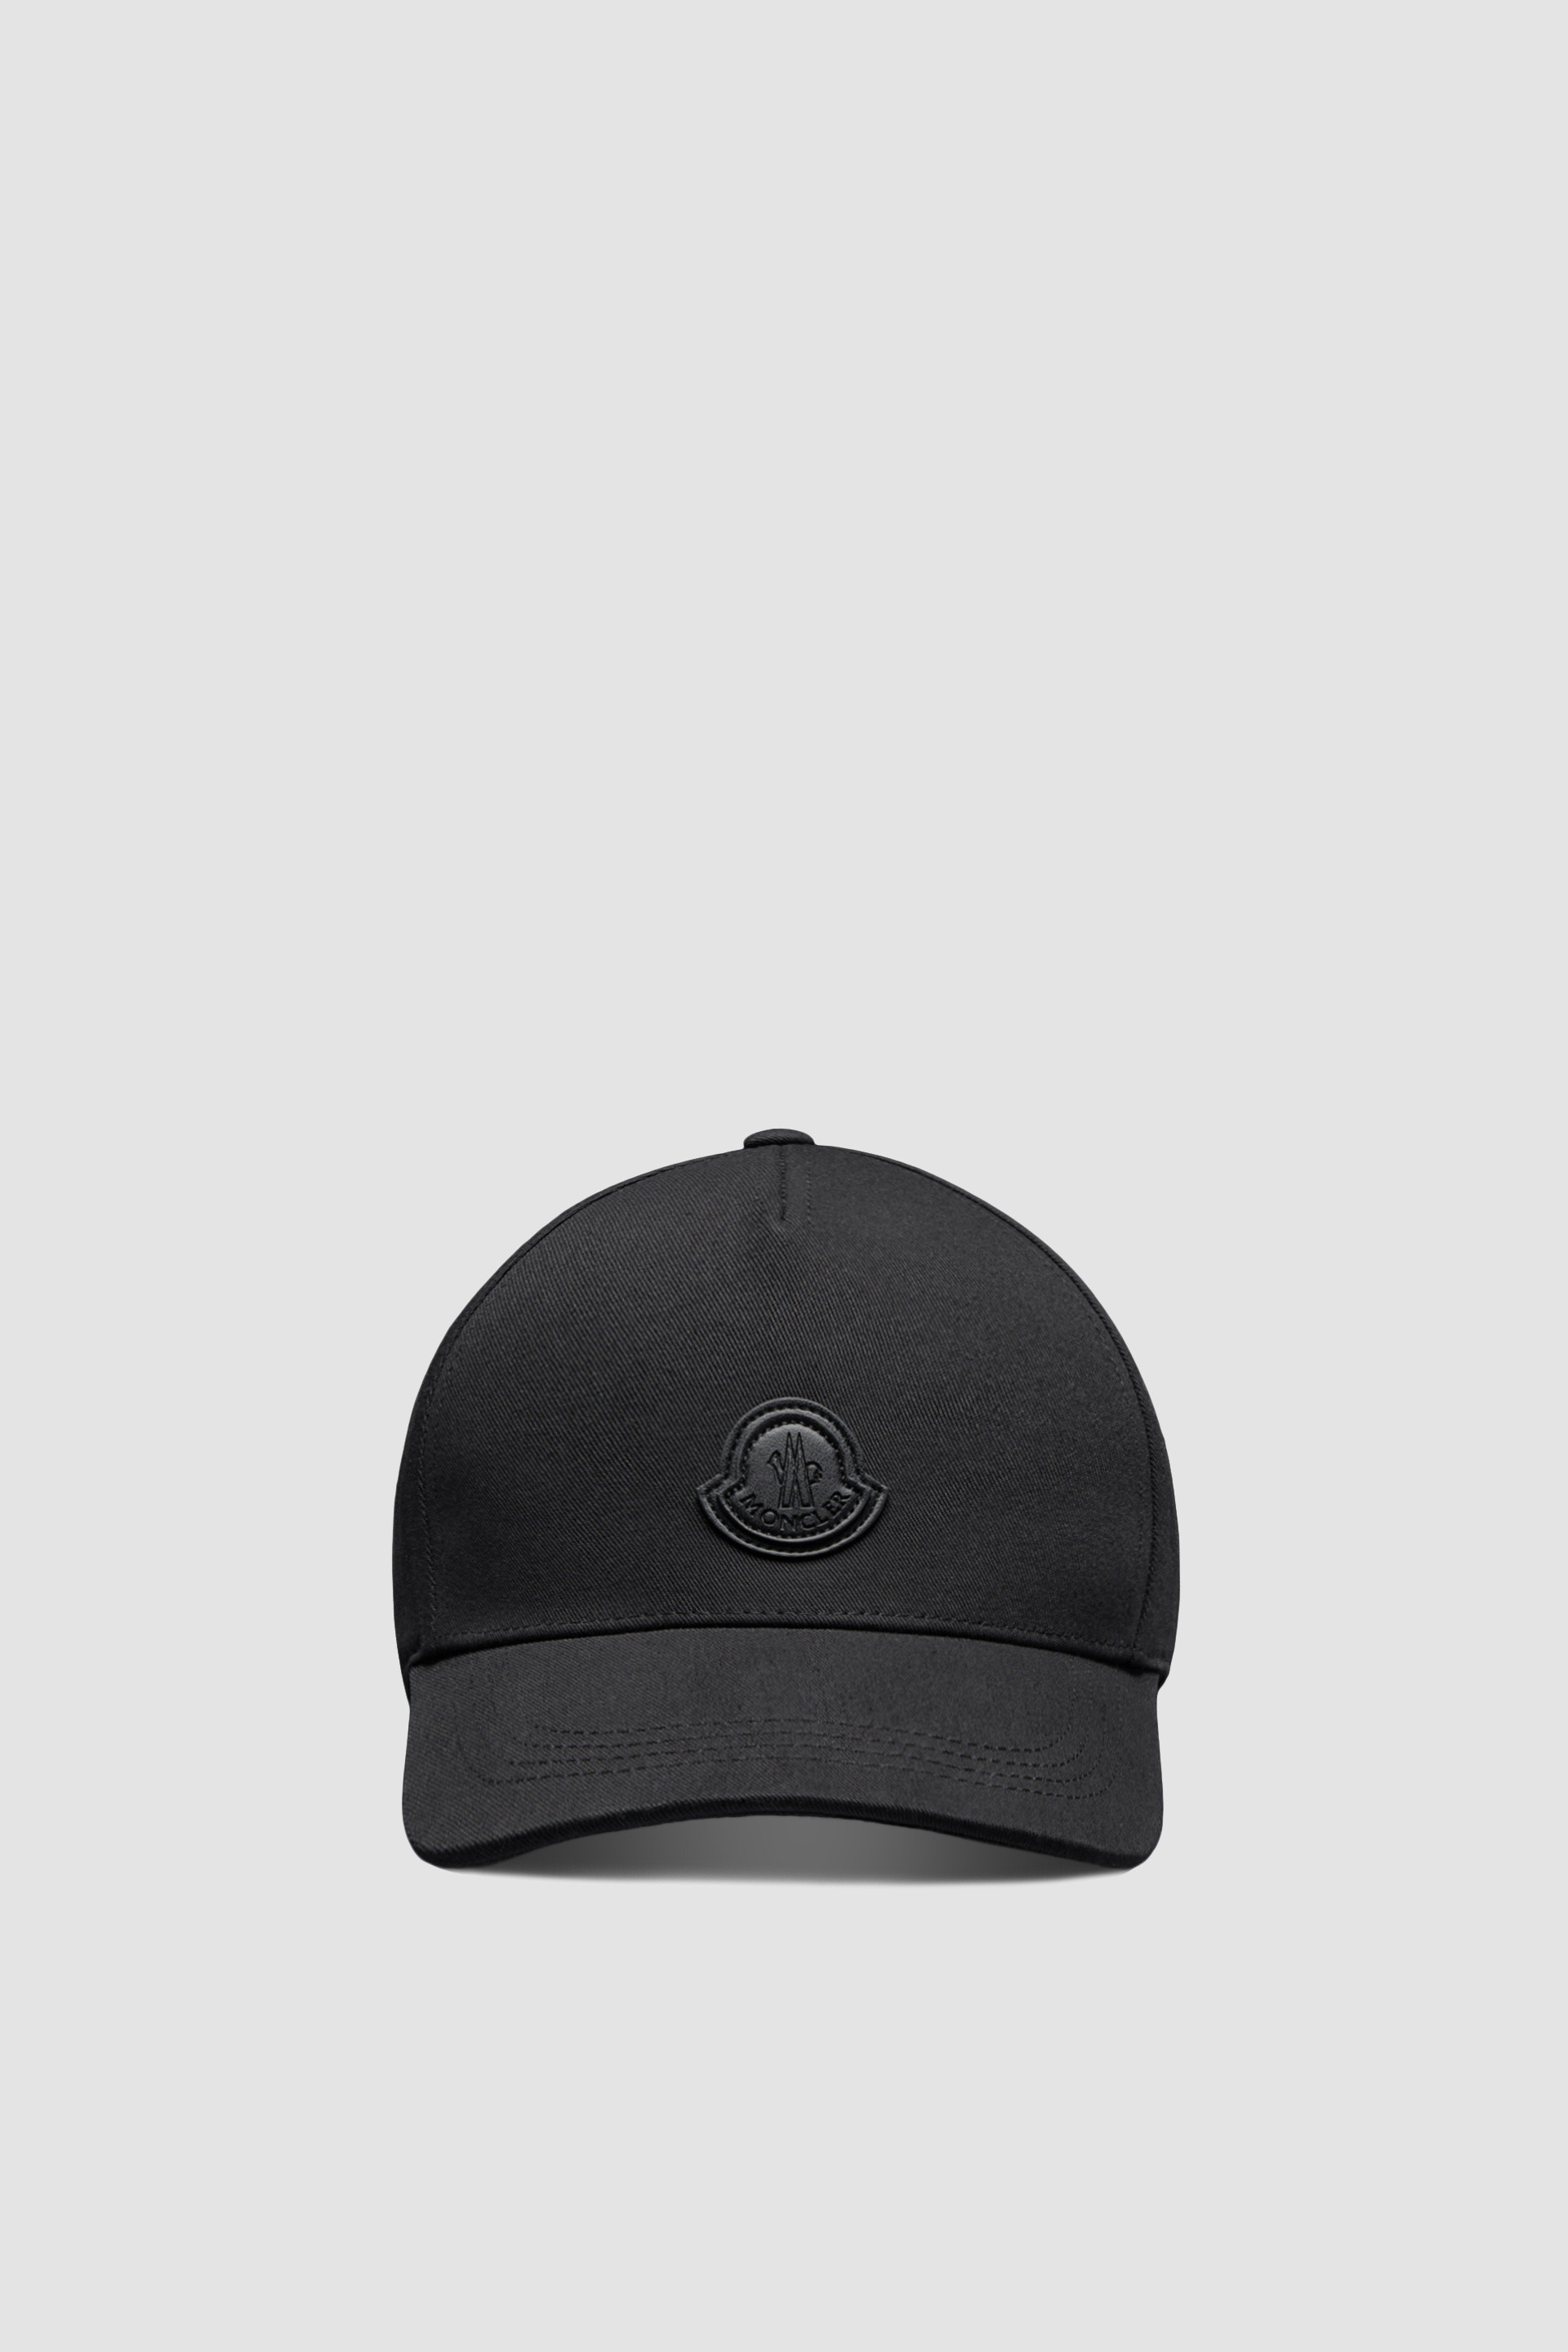 □新品 本物□モンクレール ベースボールキャップ BB CAP 帽子 メンズ ...